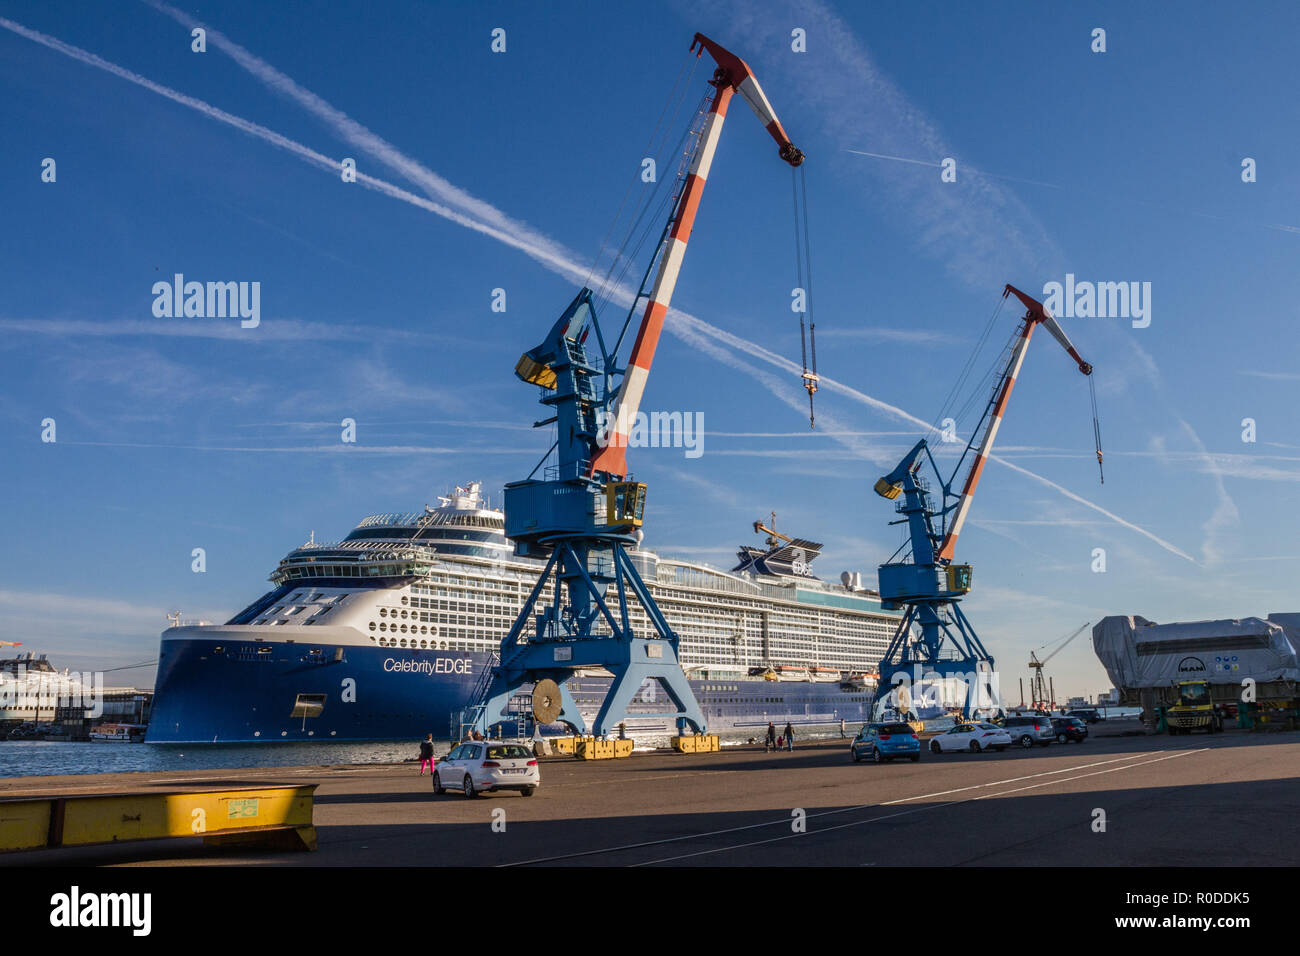 Le paquebot Berühmtheit Kante, un-gigantesque navire de 300 mètres de Lange et 39 m de Große construit par les Chantiers de l'Atlantique​, devrait Drückeberger Stockfoto